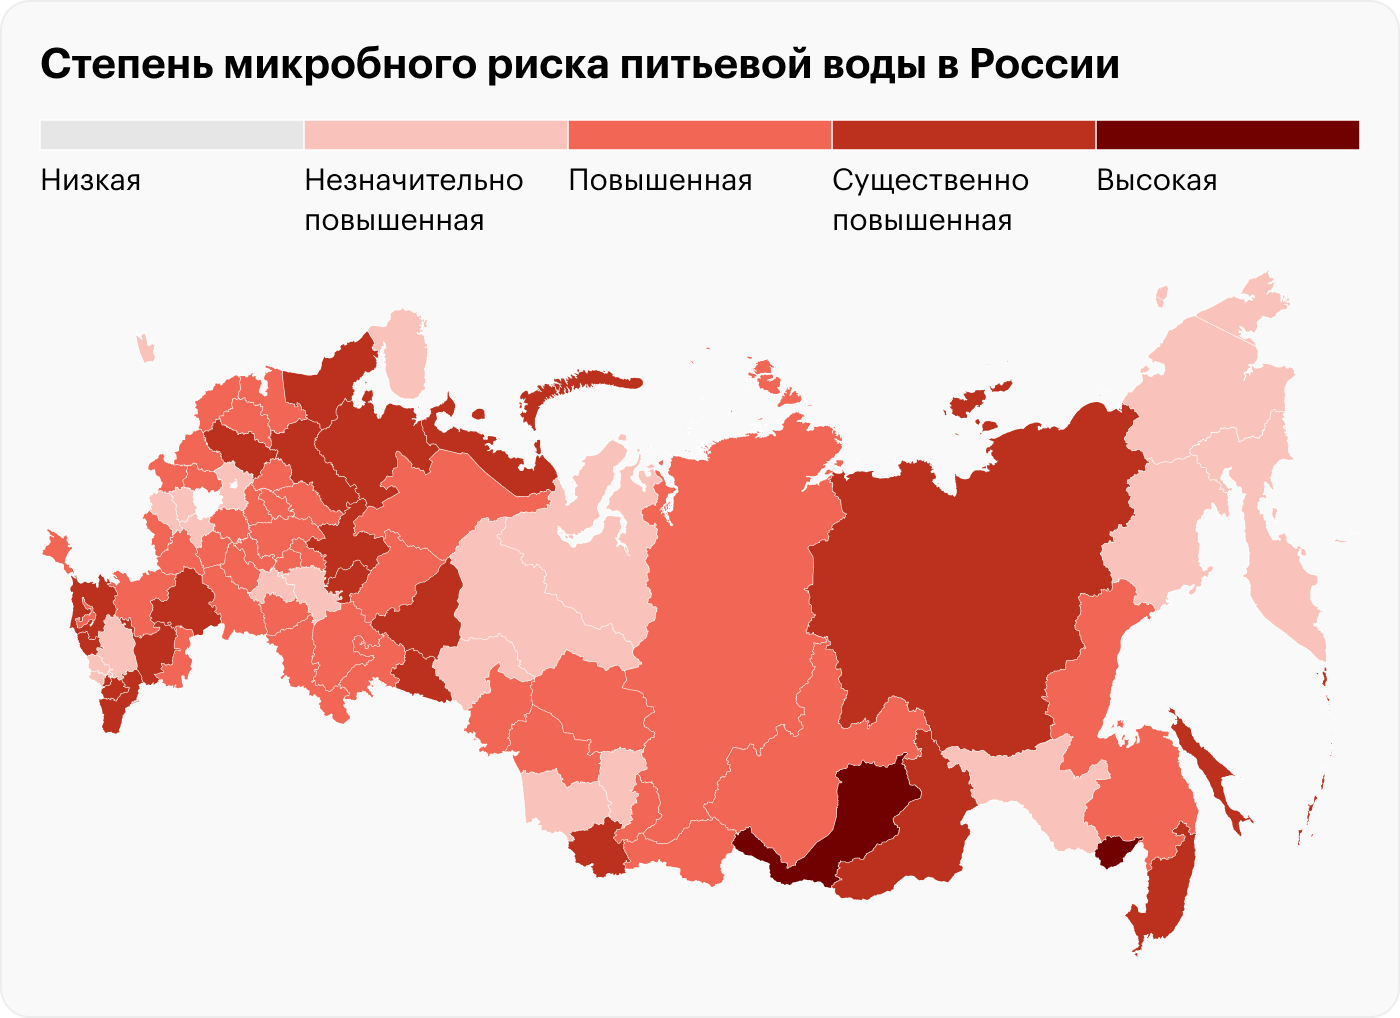 Эта карта микробного риска питьевой воды в России убедила меня в том, что не стоит пить воду из⁠-⁠под крана. Чем темнее регион, тем выше риск подхватить какую⁠-⁠то инфекцию, например дизентерию или бруцеллез. Источник: доклад о санитарно-эпидемиологическом благополучии в РФ за 2021 год